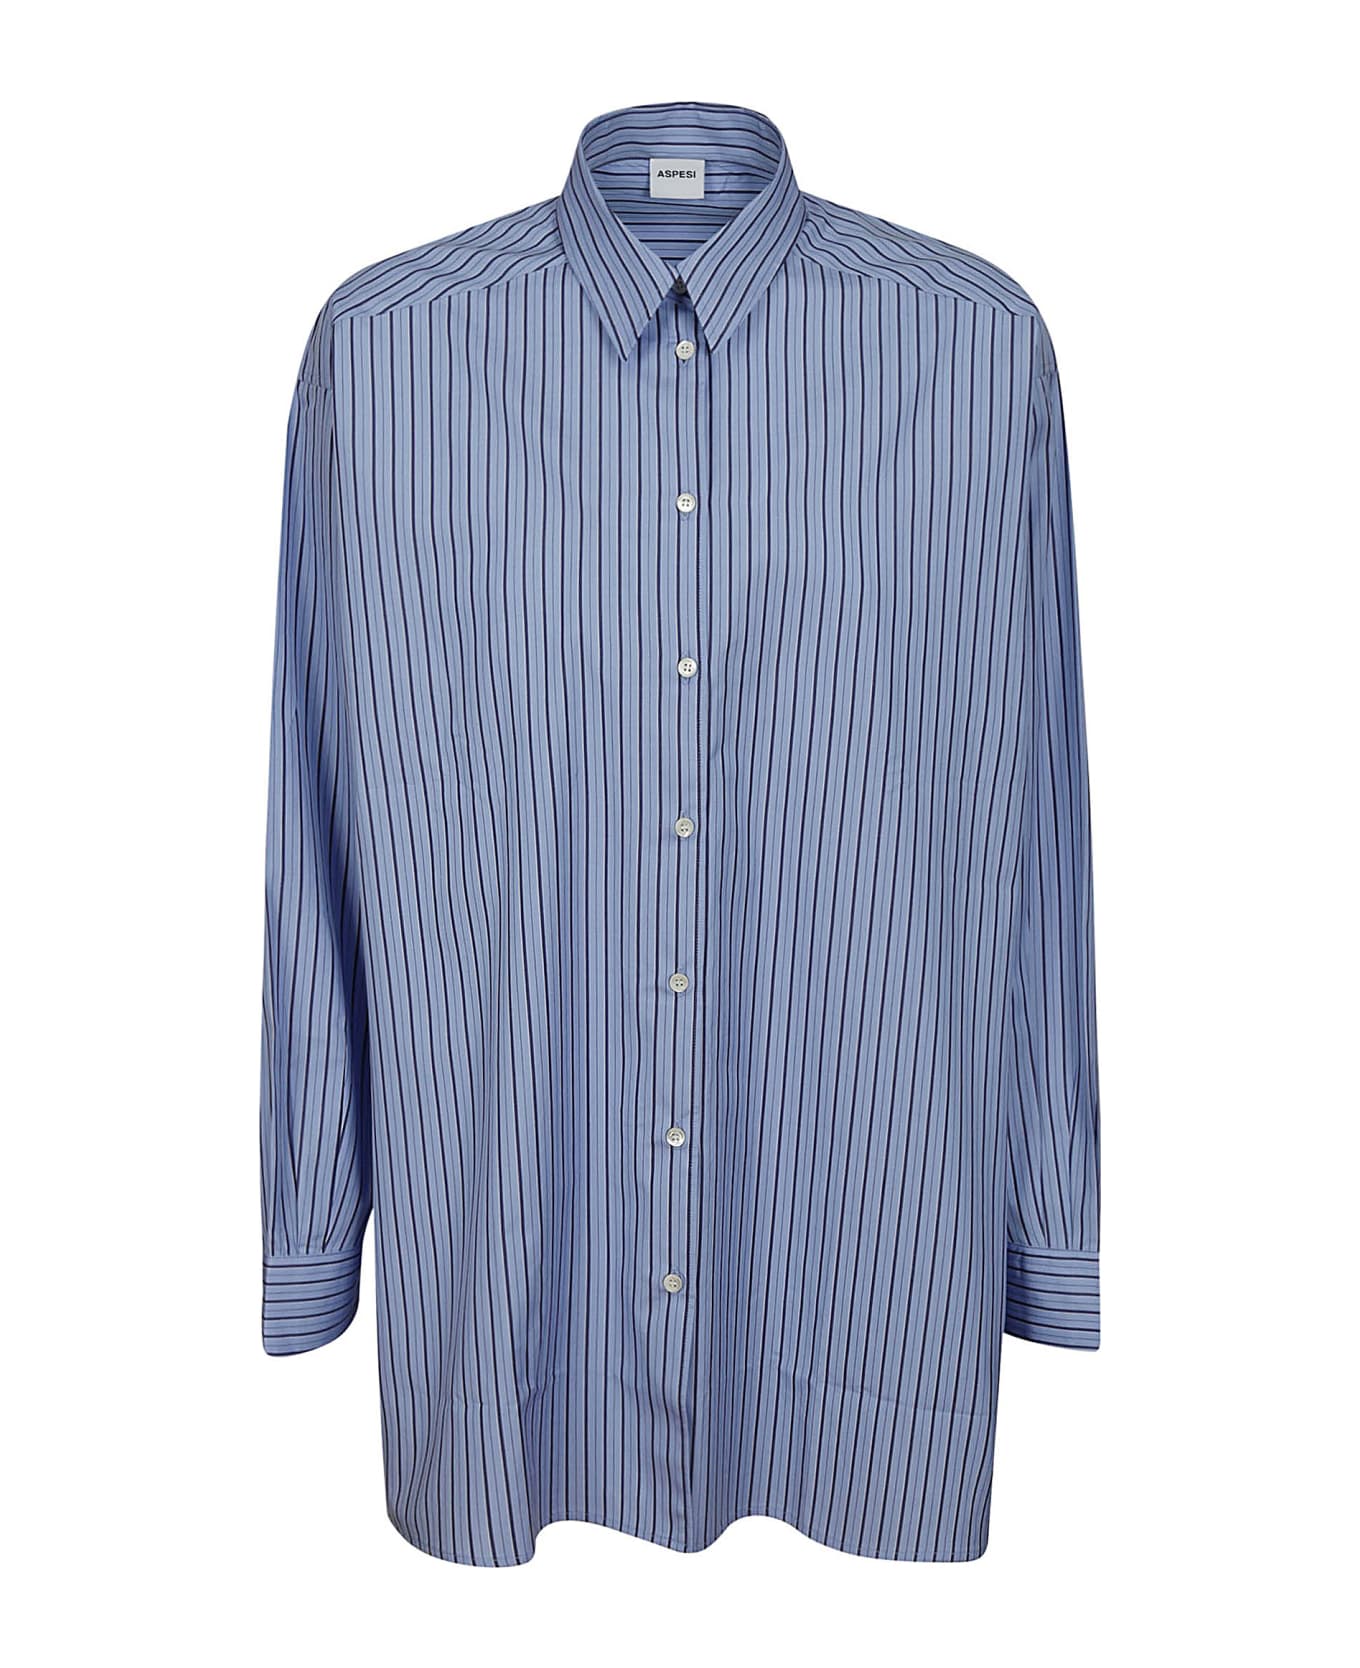 Aspesi Shirt 5455 - Riga Blu シャツ